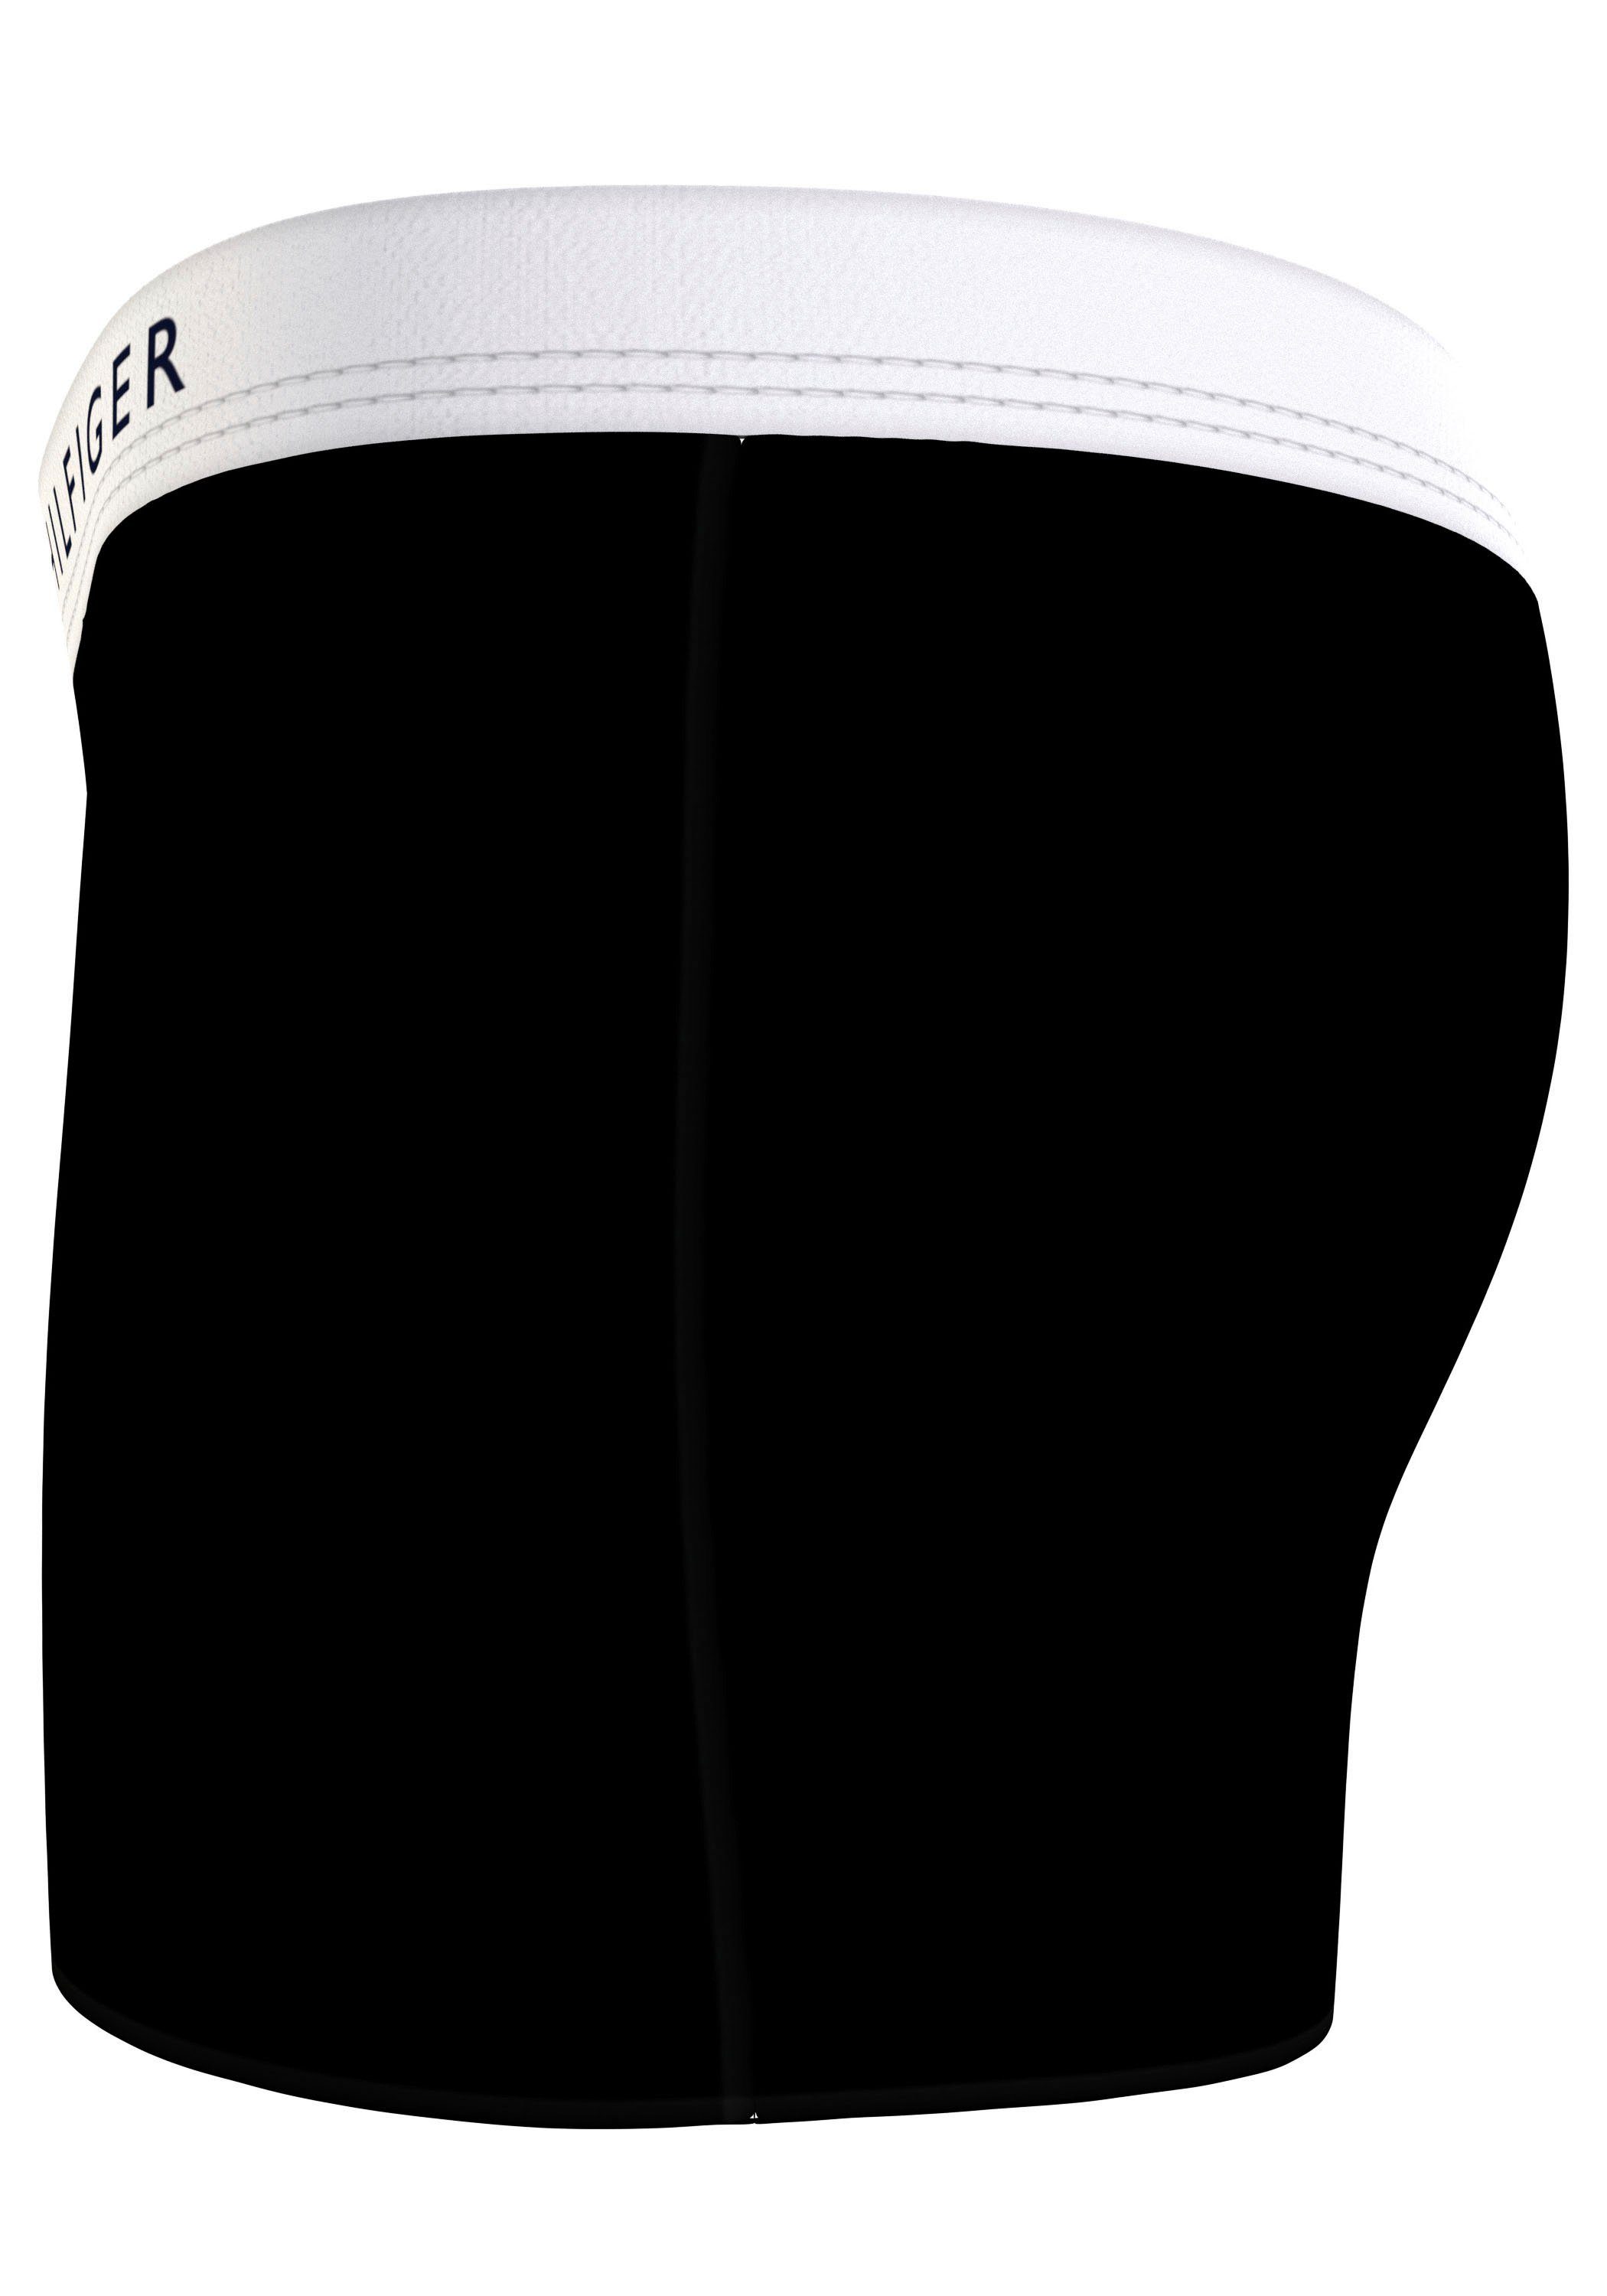 Tommy Hilfiger Underwear Trunk met logo op de tailleband (2 stuks Set van 2)